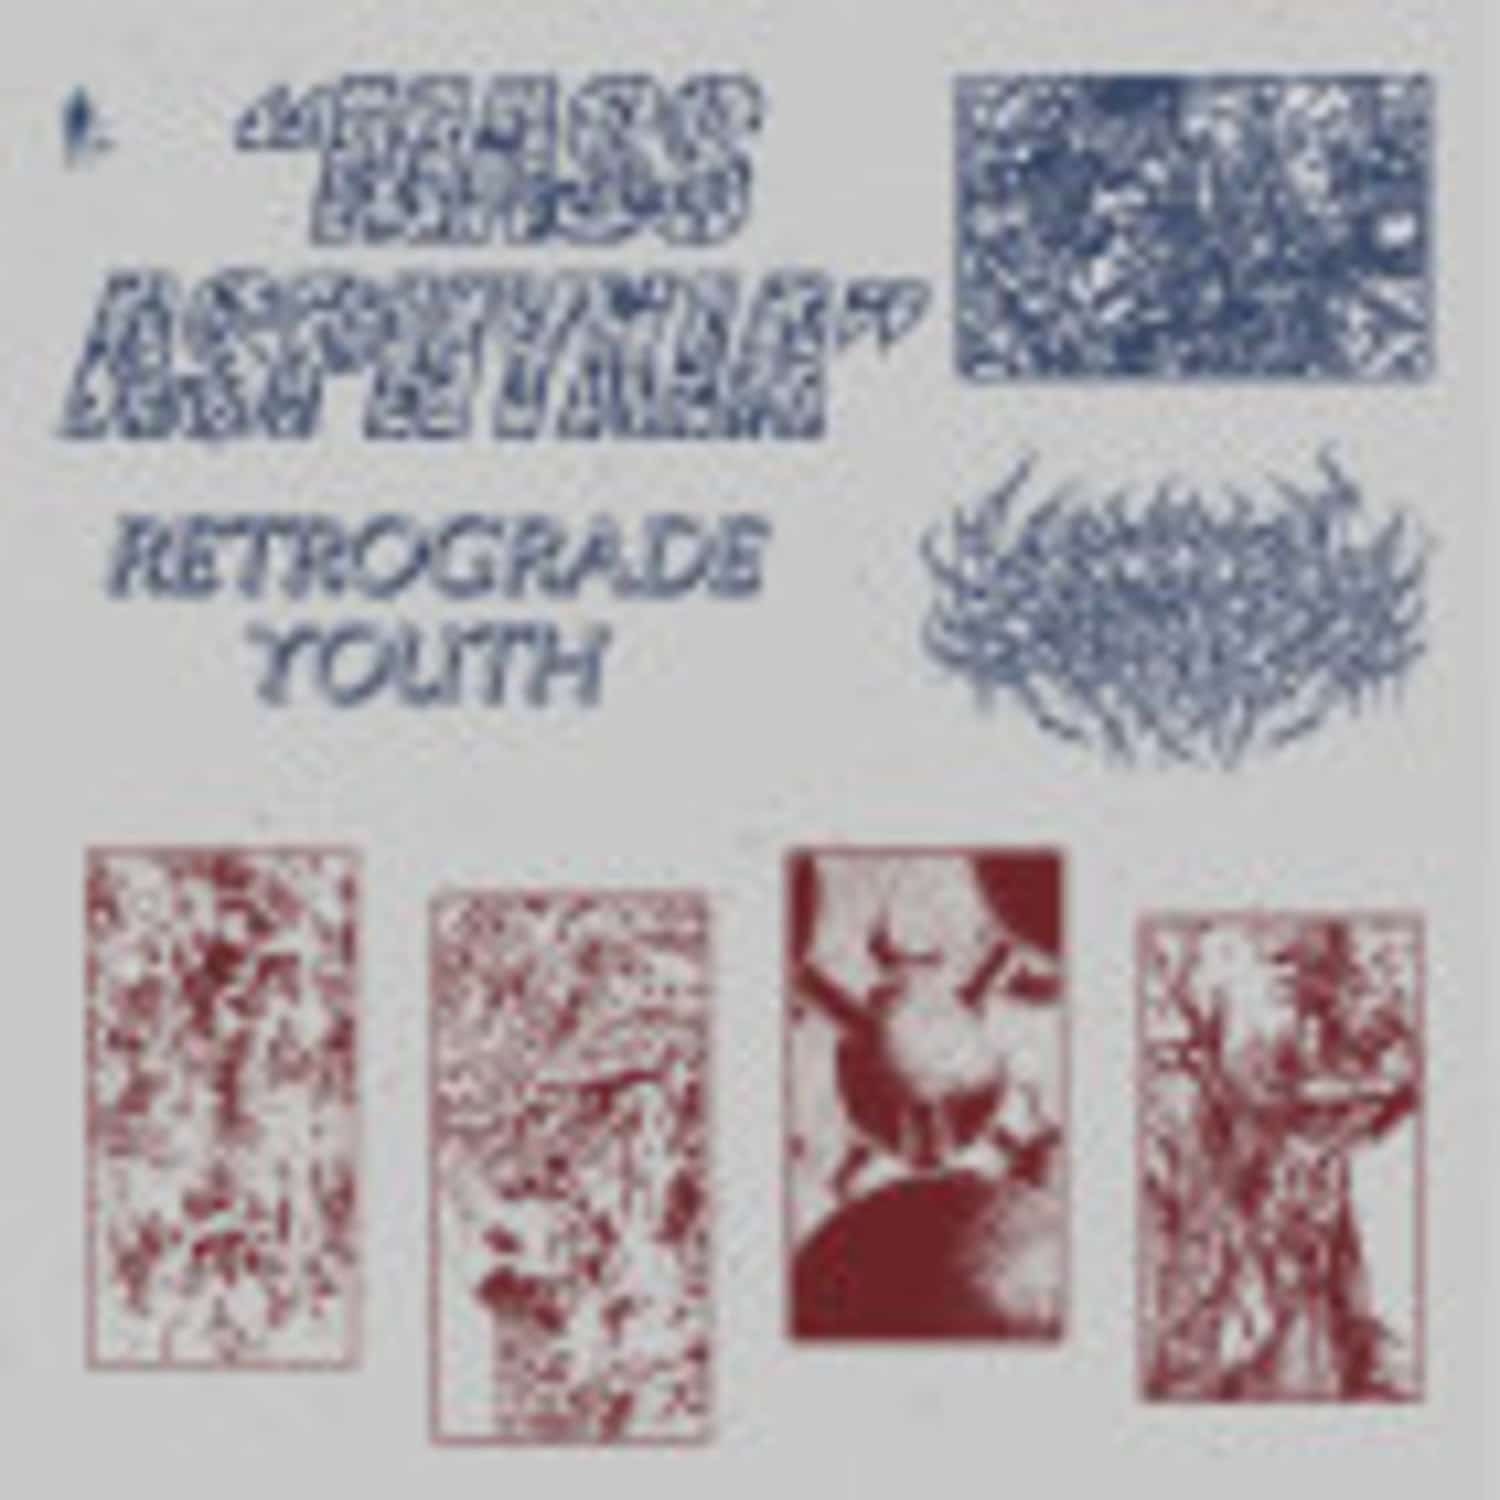 Retrograde Youth - MASS ASPHYXIA